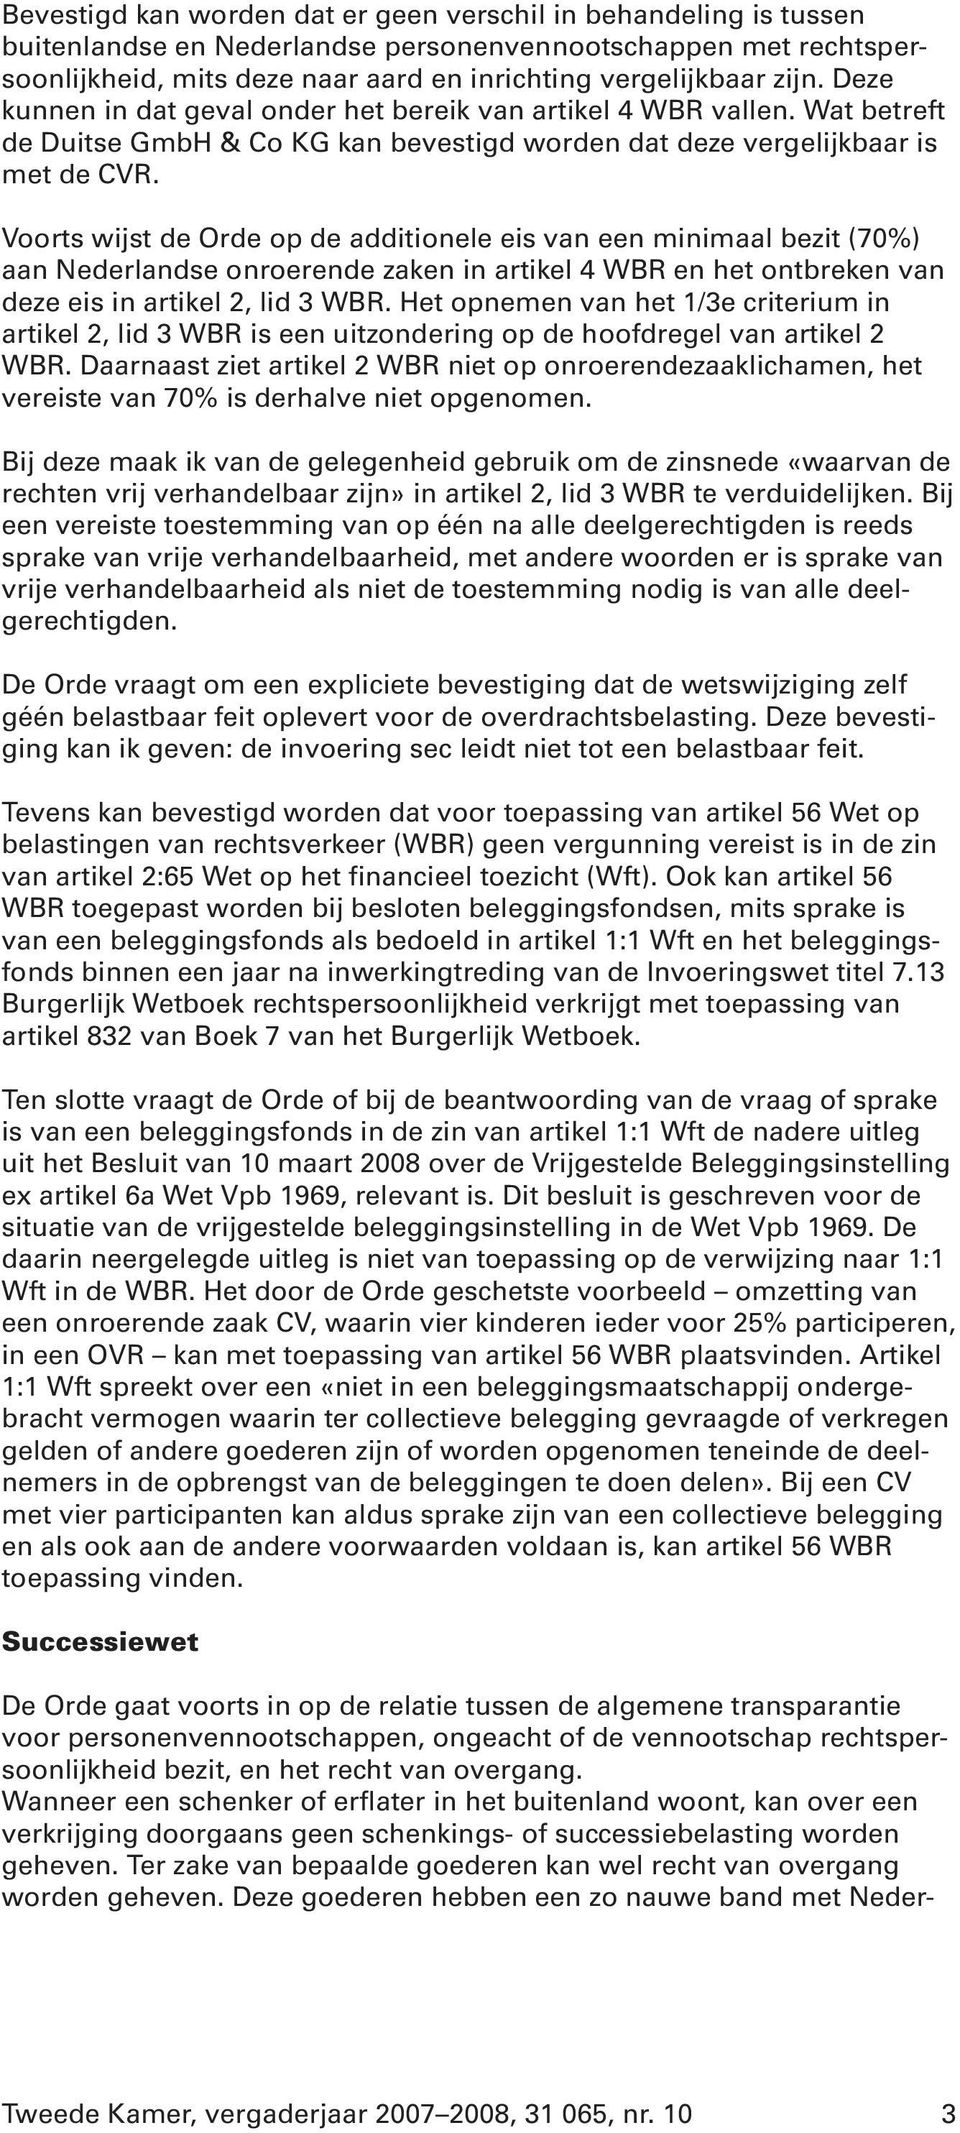 Voorts wijst de Orde op de additionele eis van een minimaal bezit (70%) aan Nederlandse onroerende zaken in artikel 4 WBR en het ontbreken van deze eis in artikel 2, lid 3 WBR.